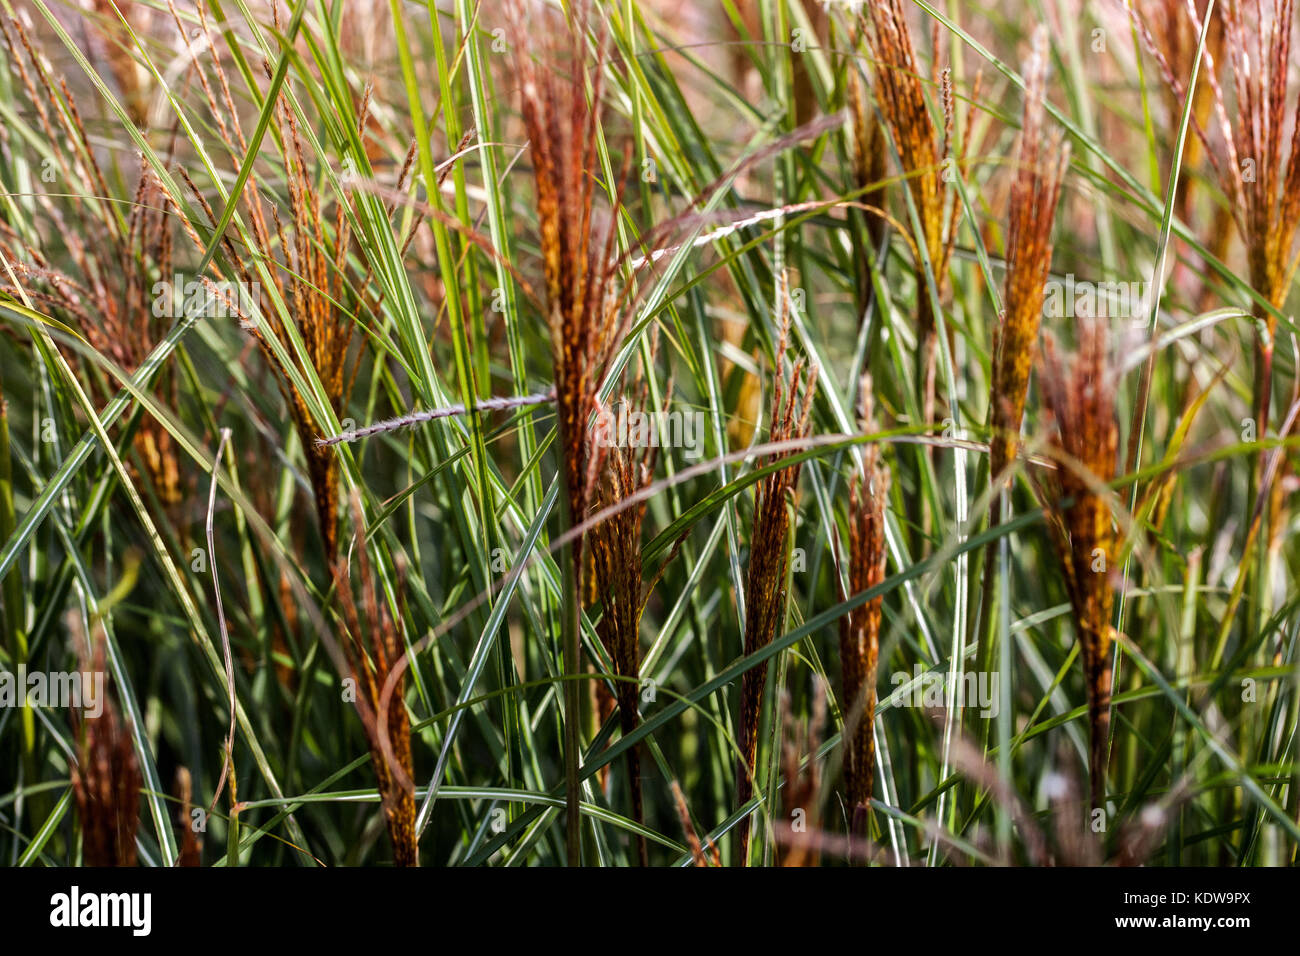 Chinese silver grass, Miscanthus sinensis 'Yaku Jima' Stock Photo